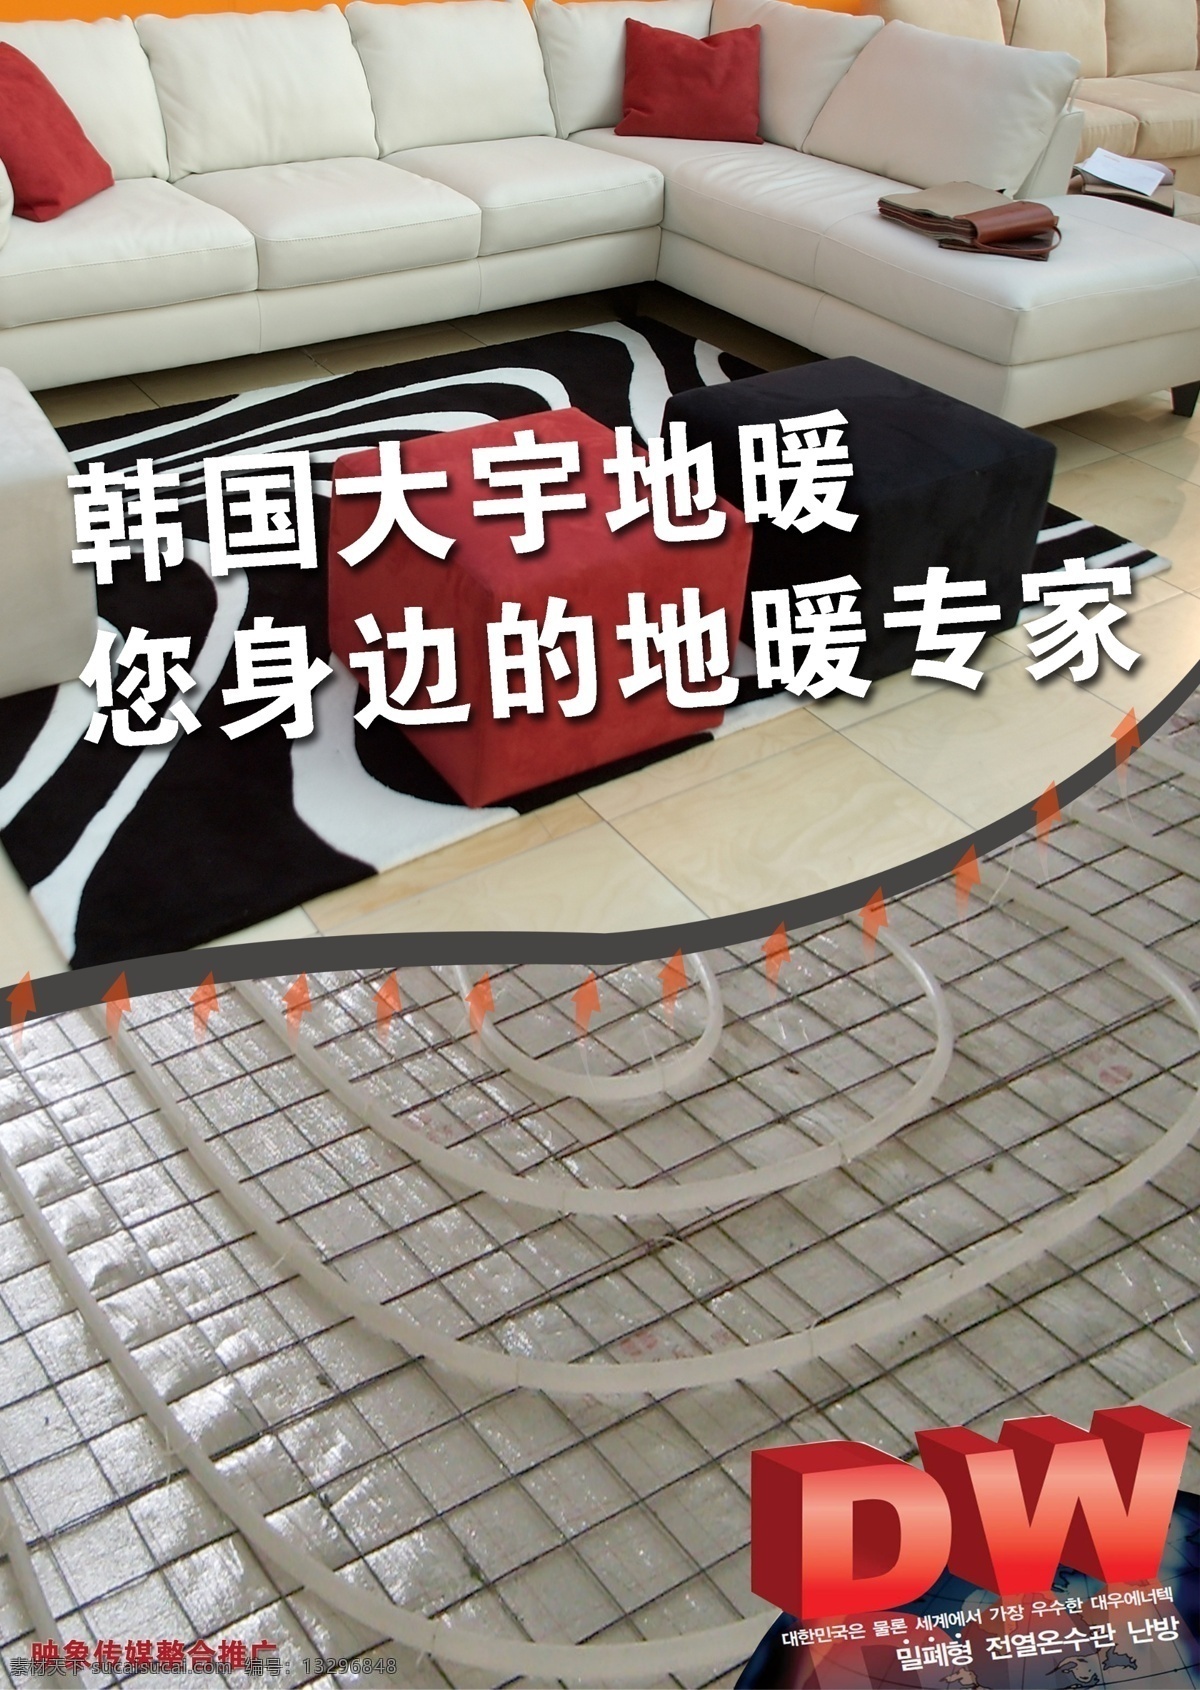 地暖海报设计 地板 地暖 海报 dm dw 韩国大宇 原创设计 dm宣传单 广告设计模板 源文件